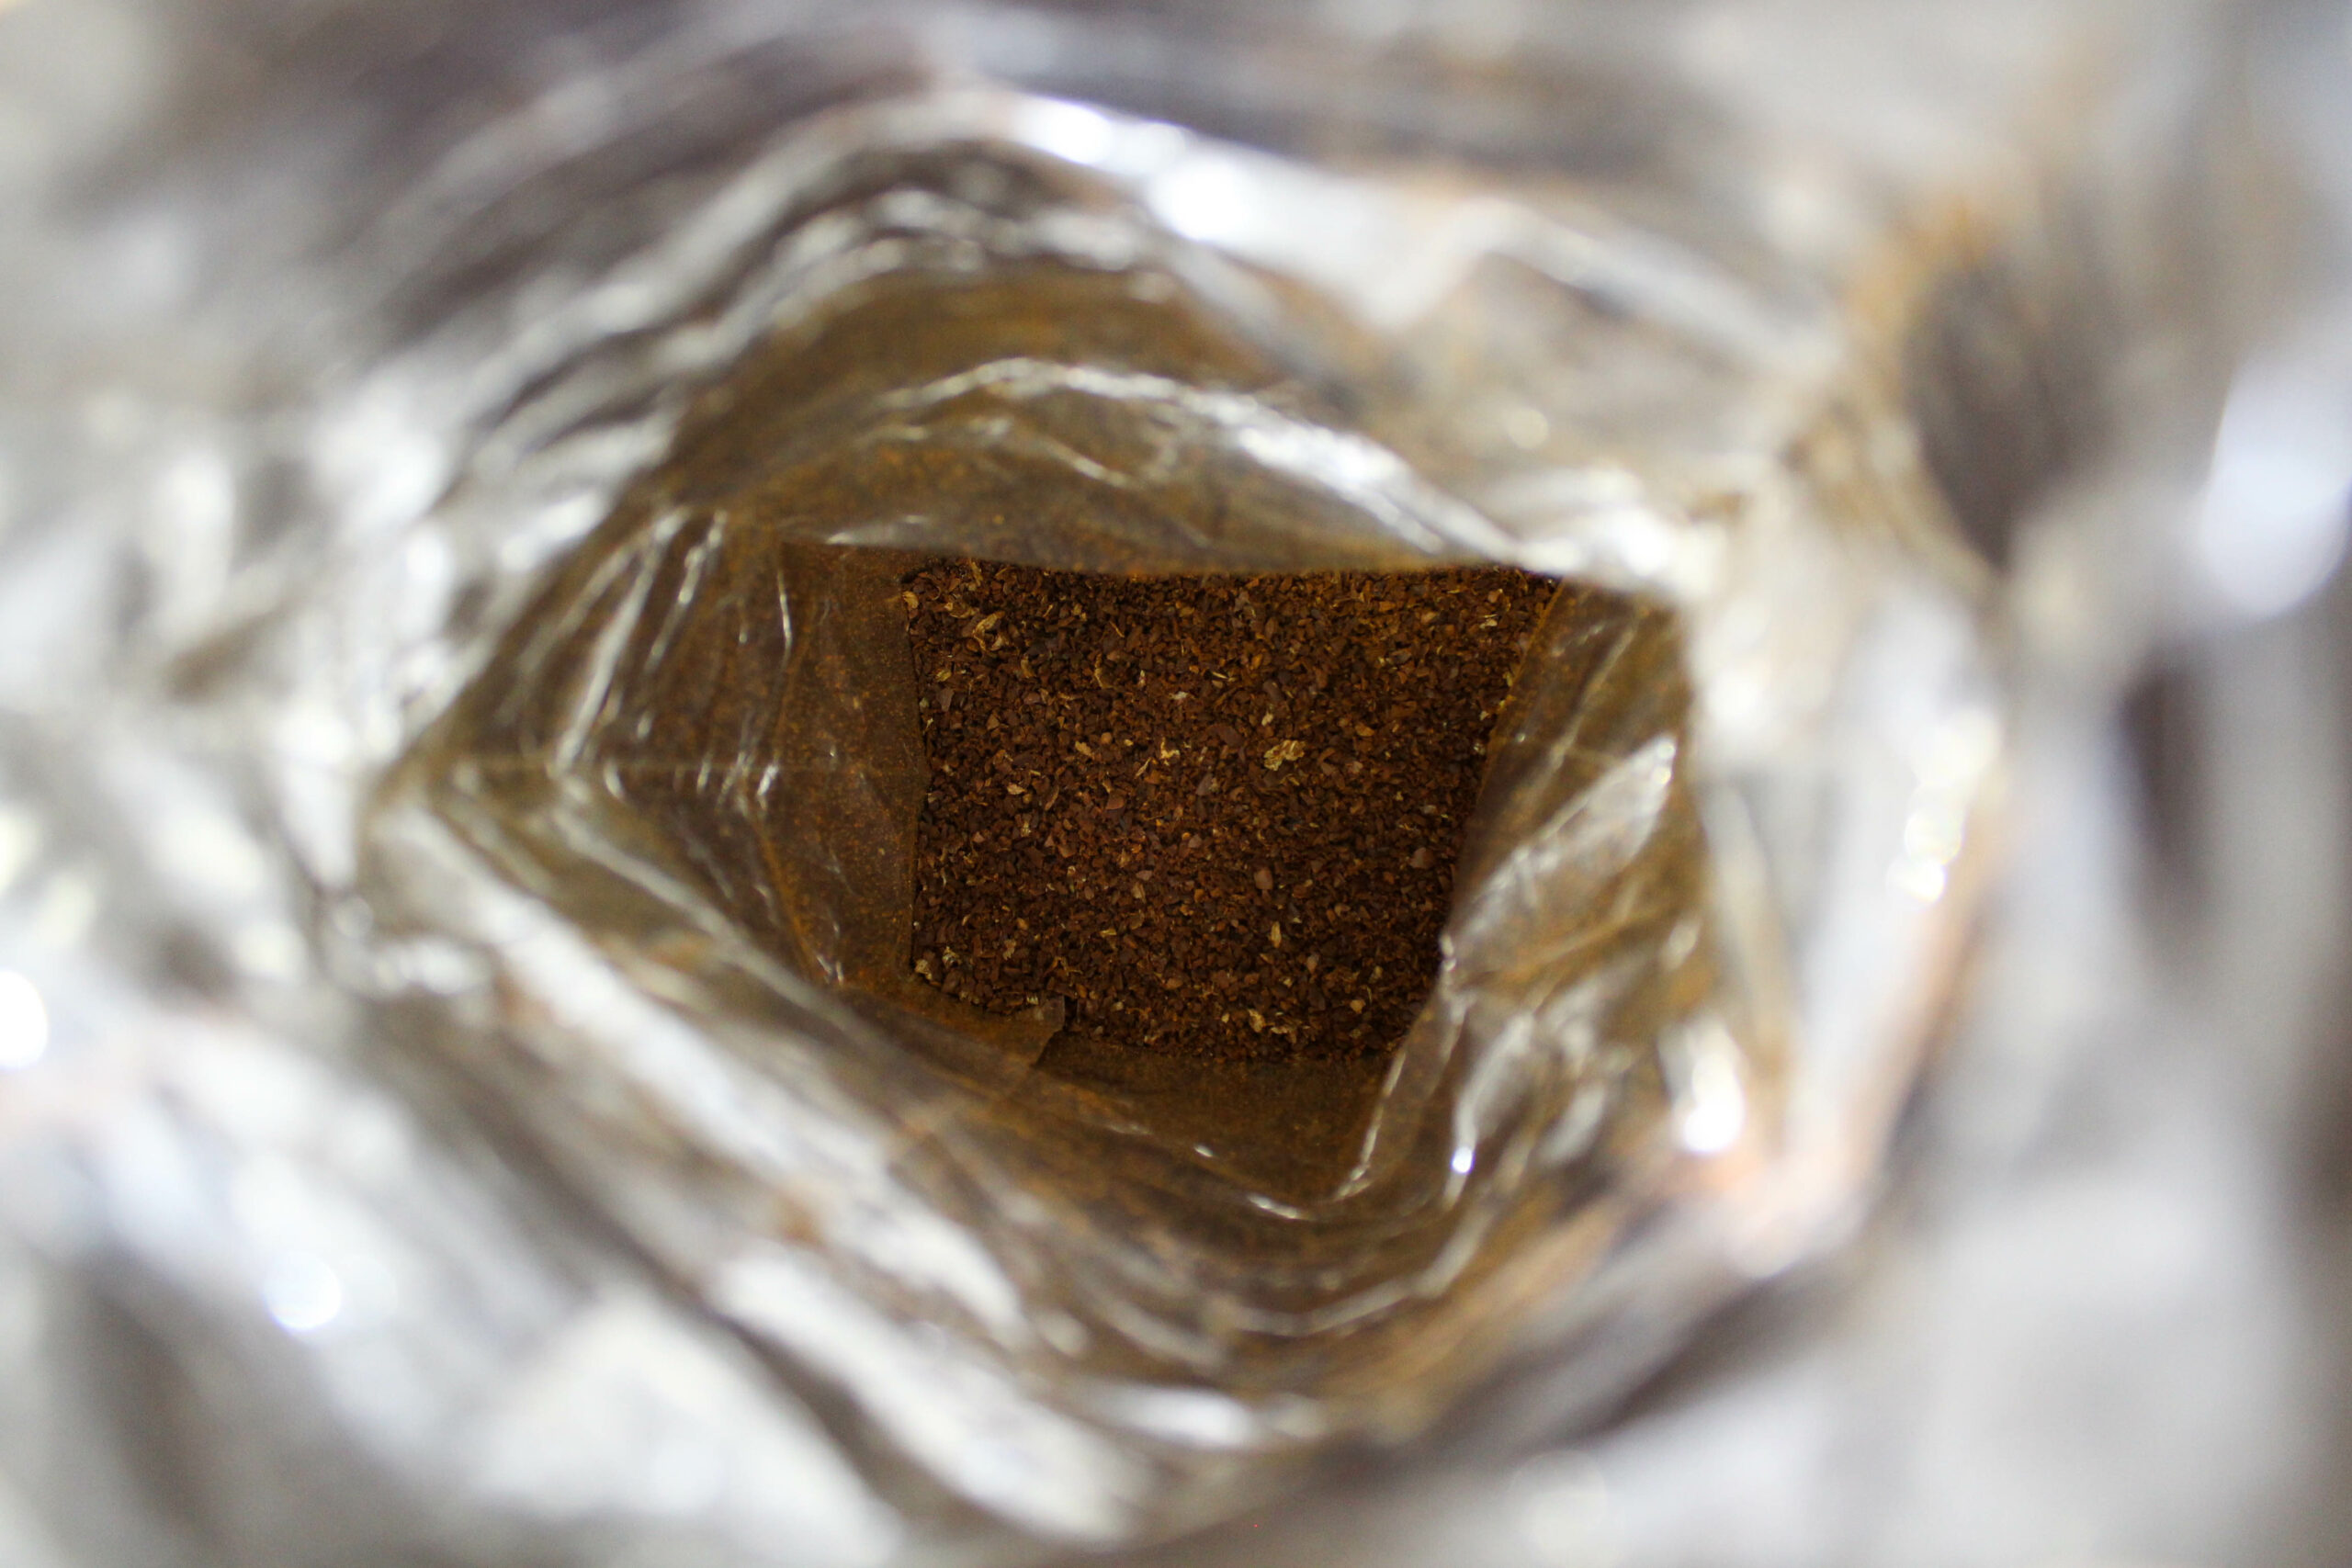 Vue de l'intérieur d'un sachet de café.